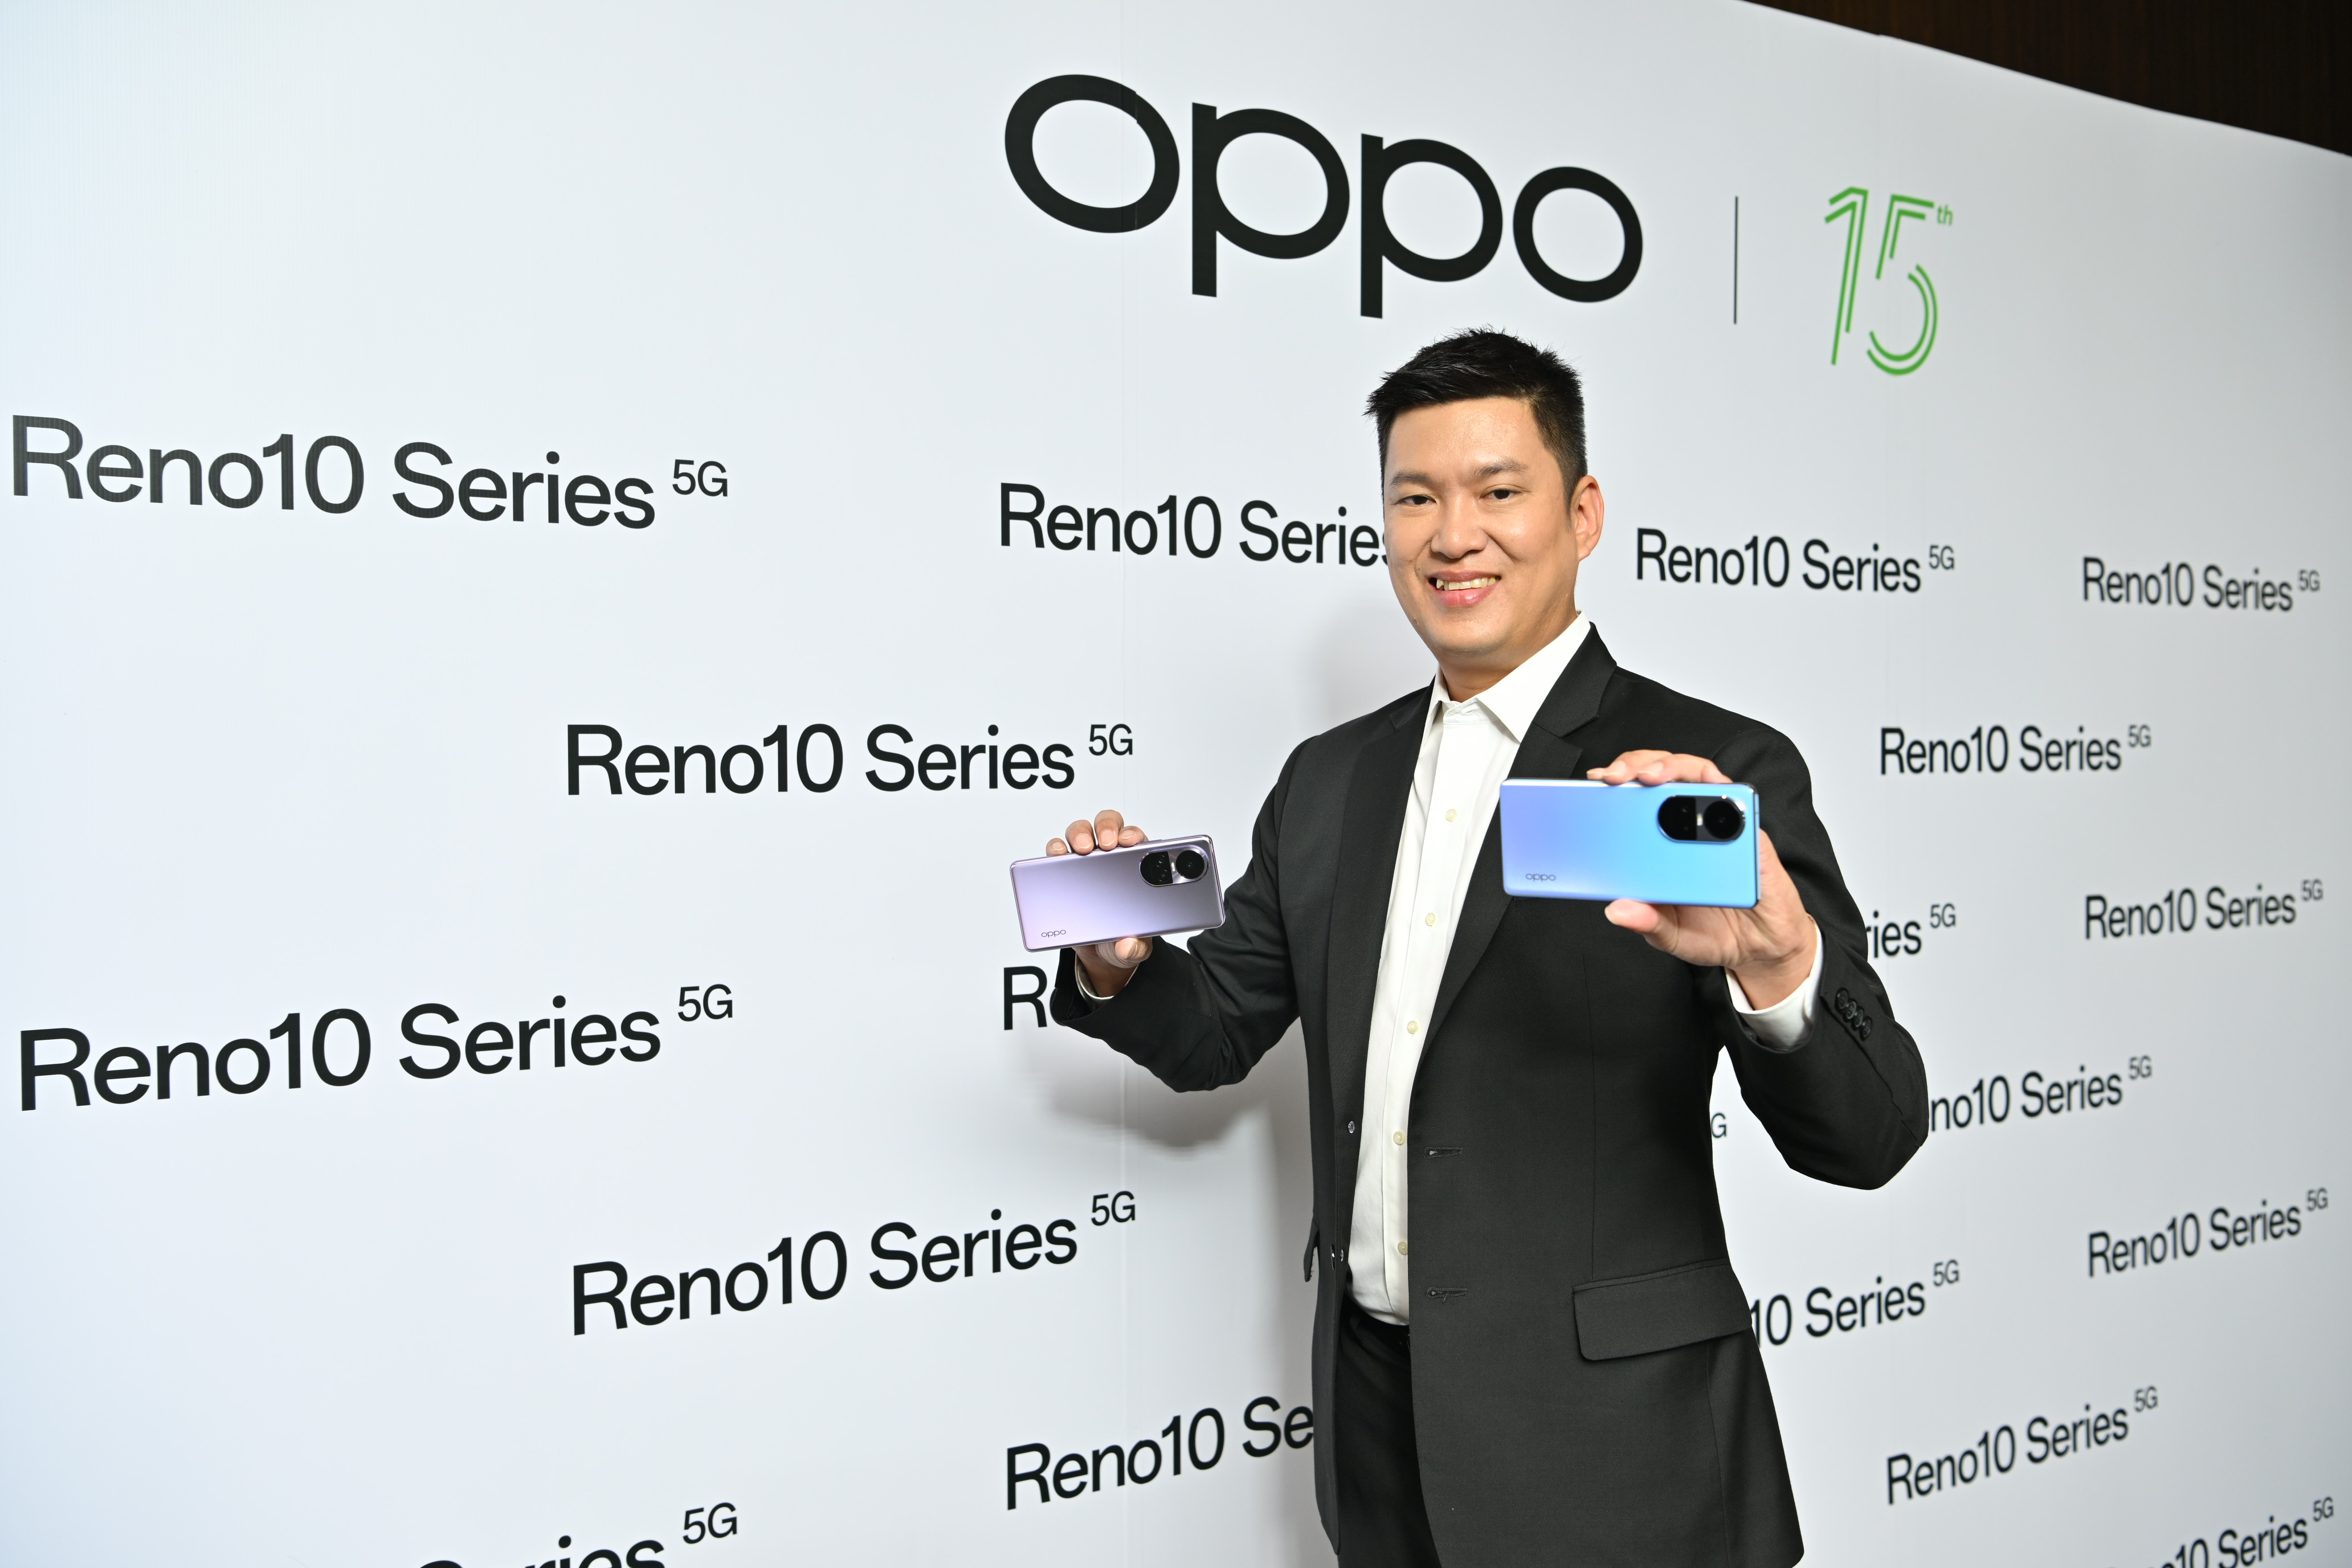 ออปโป้ ประเทศไทย ฉลอง 15 ปี เปิดตัว OPPO Reno10 Series 5G ครั้งแรกของสมาร์ตโฟนระดับกลางที่มาพร้อม Telephoto Portrait Camera กล้องพอร์ตเทรตซูมได้